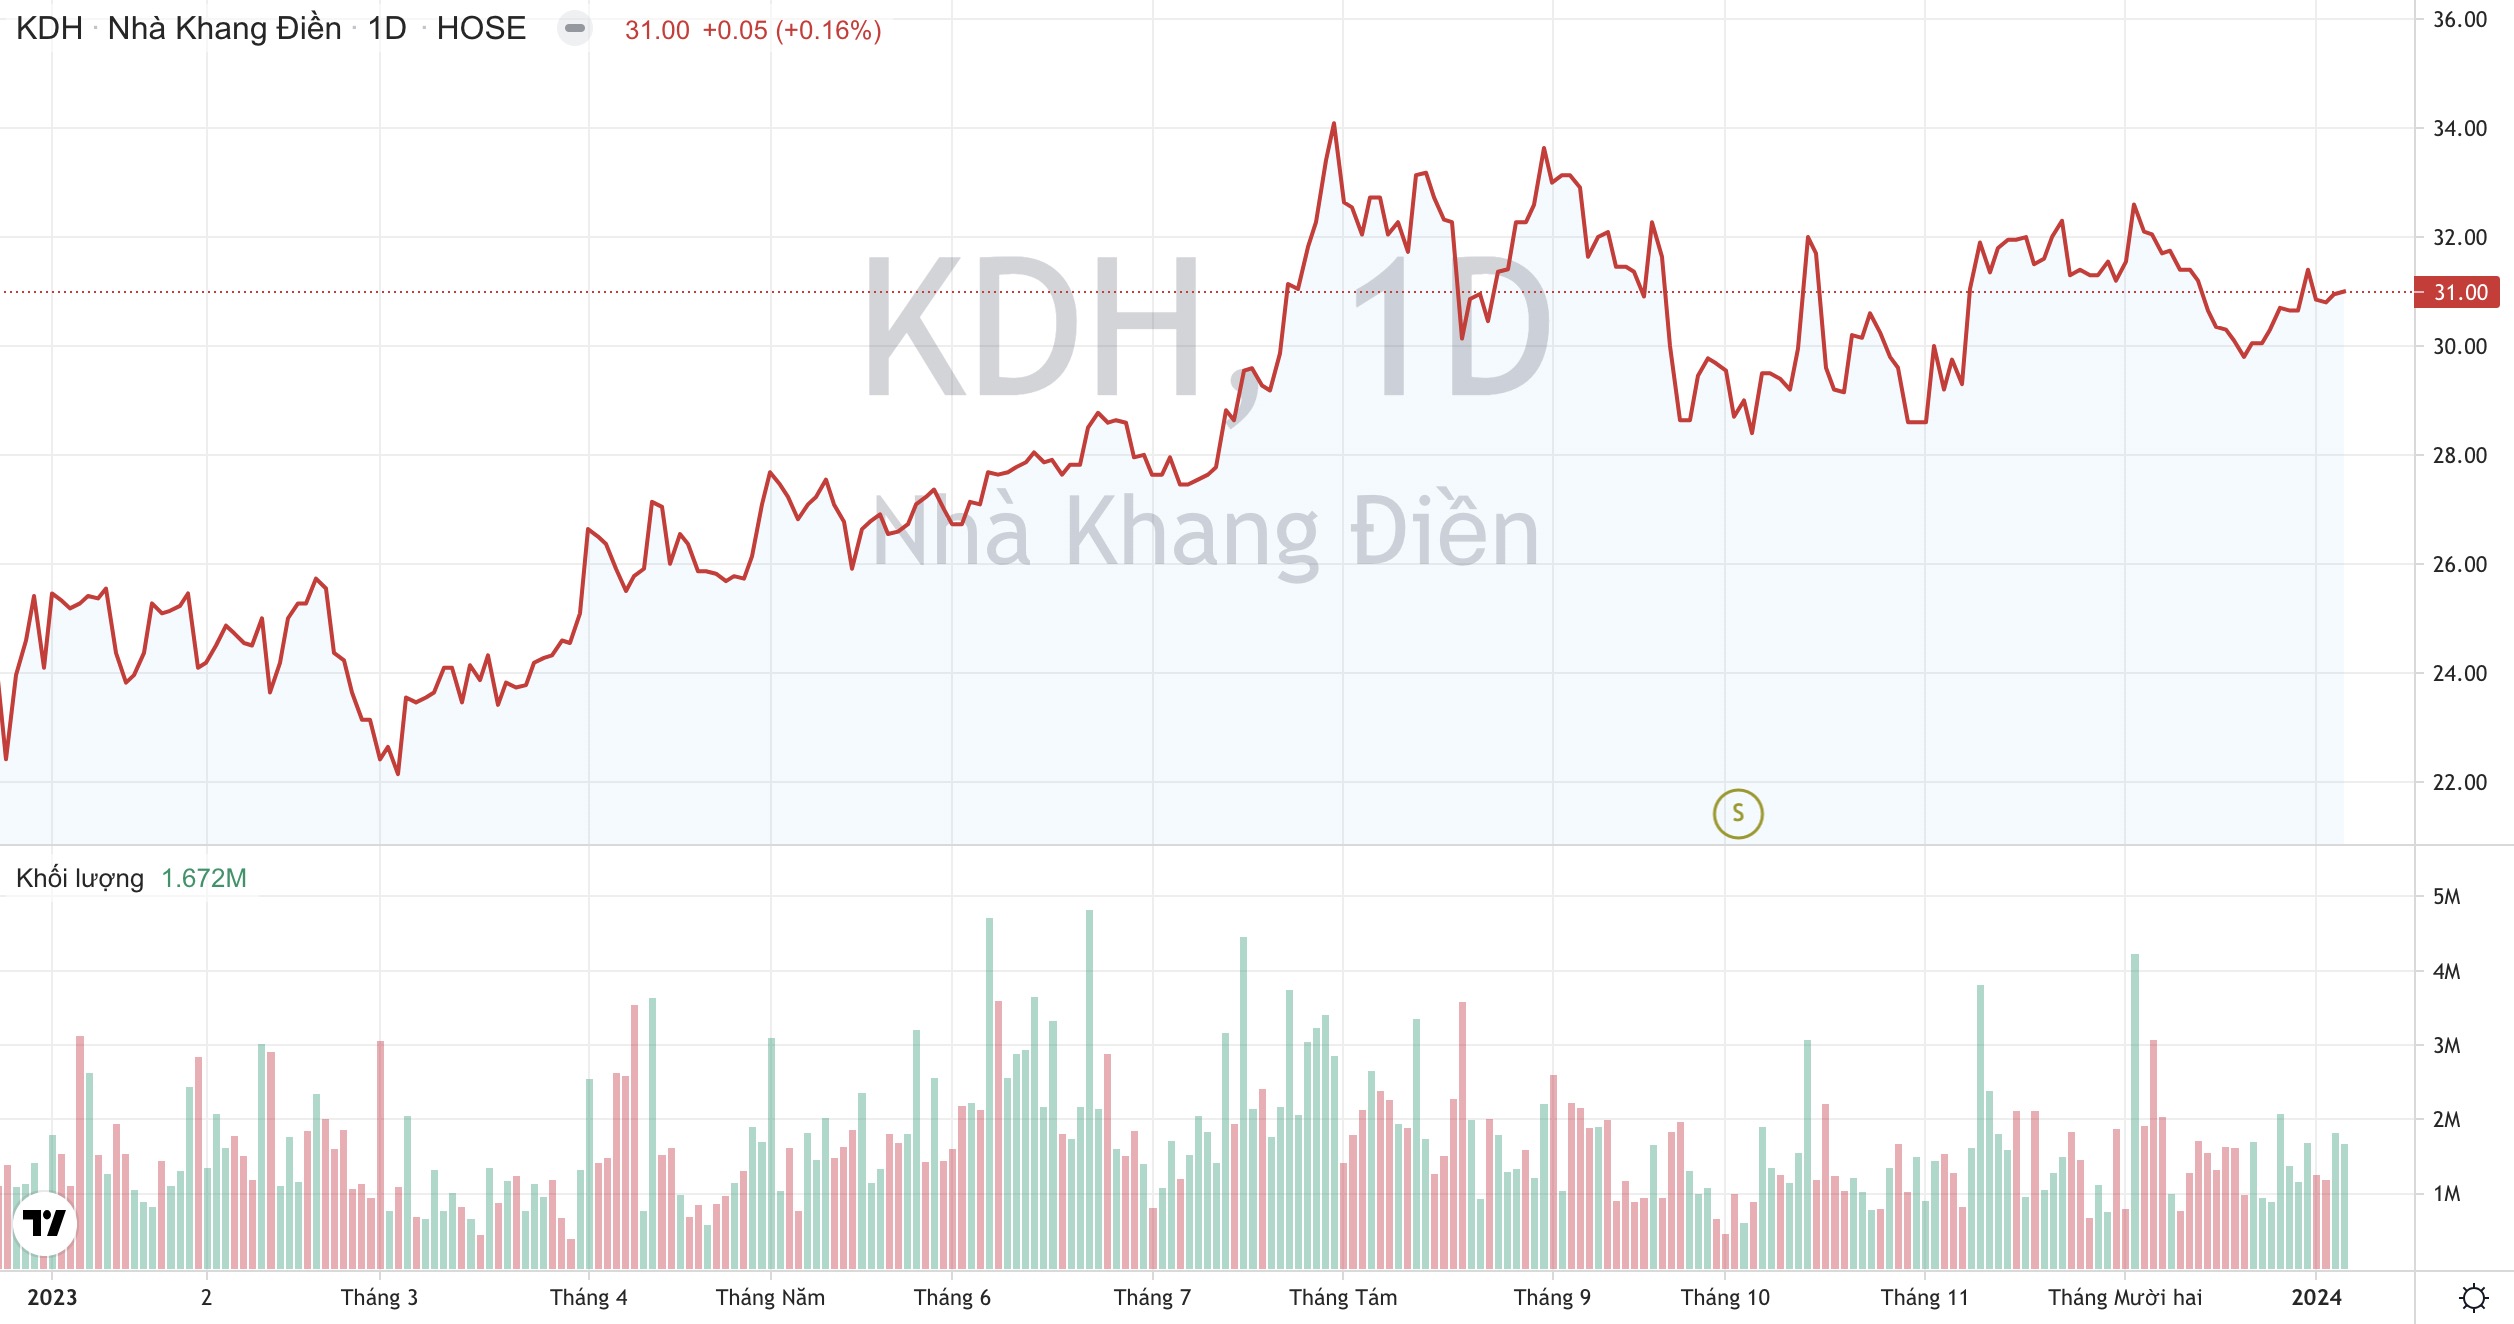 Dragon Capital gom thêm 1 triệu cổ phiếu KDH, kỳ vọng lãi ròng quý 4/2023 của Nhà Khang Điền tăng vọt? 2